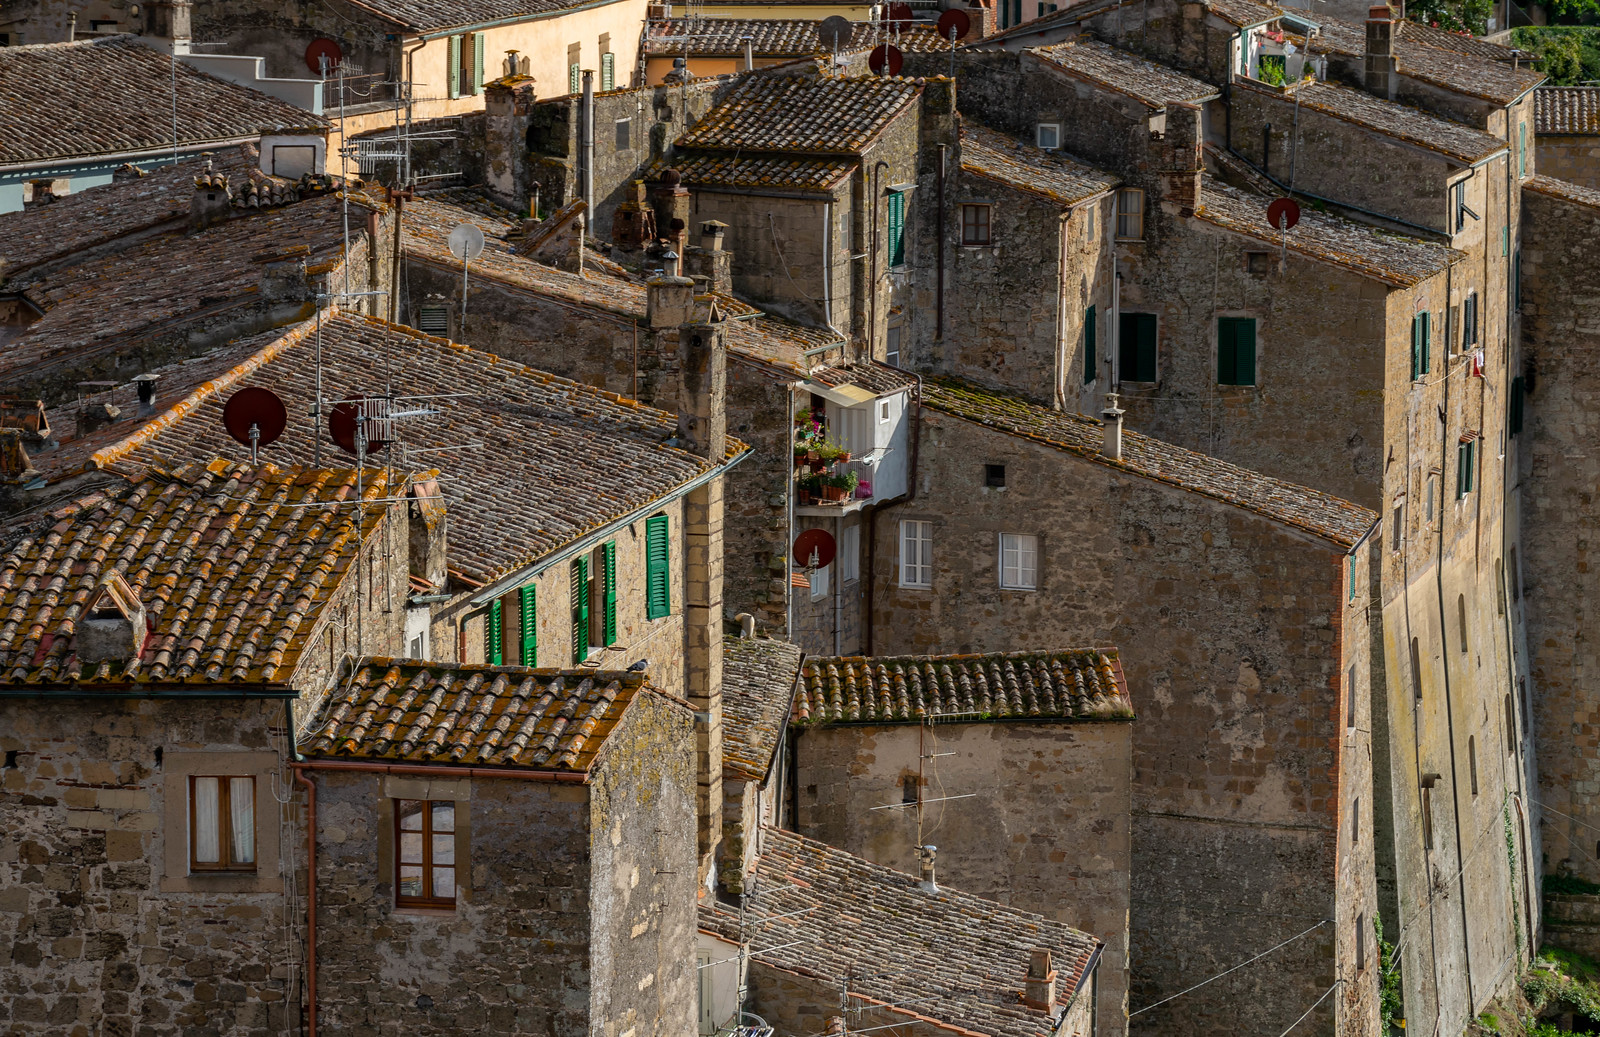 Tall stone houses in Sorano Italy